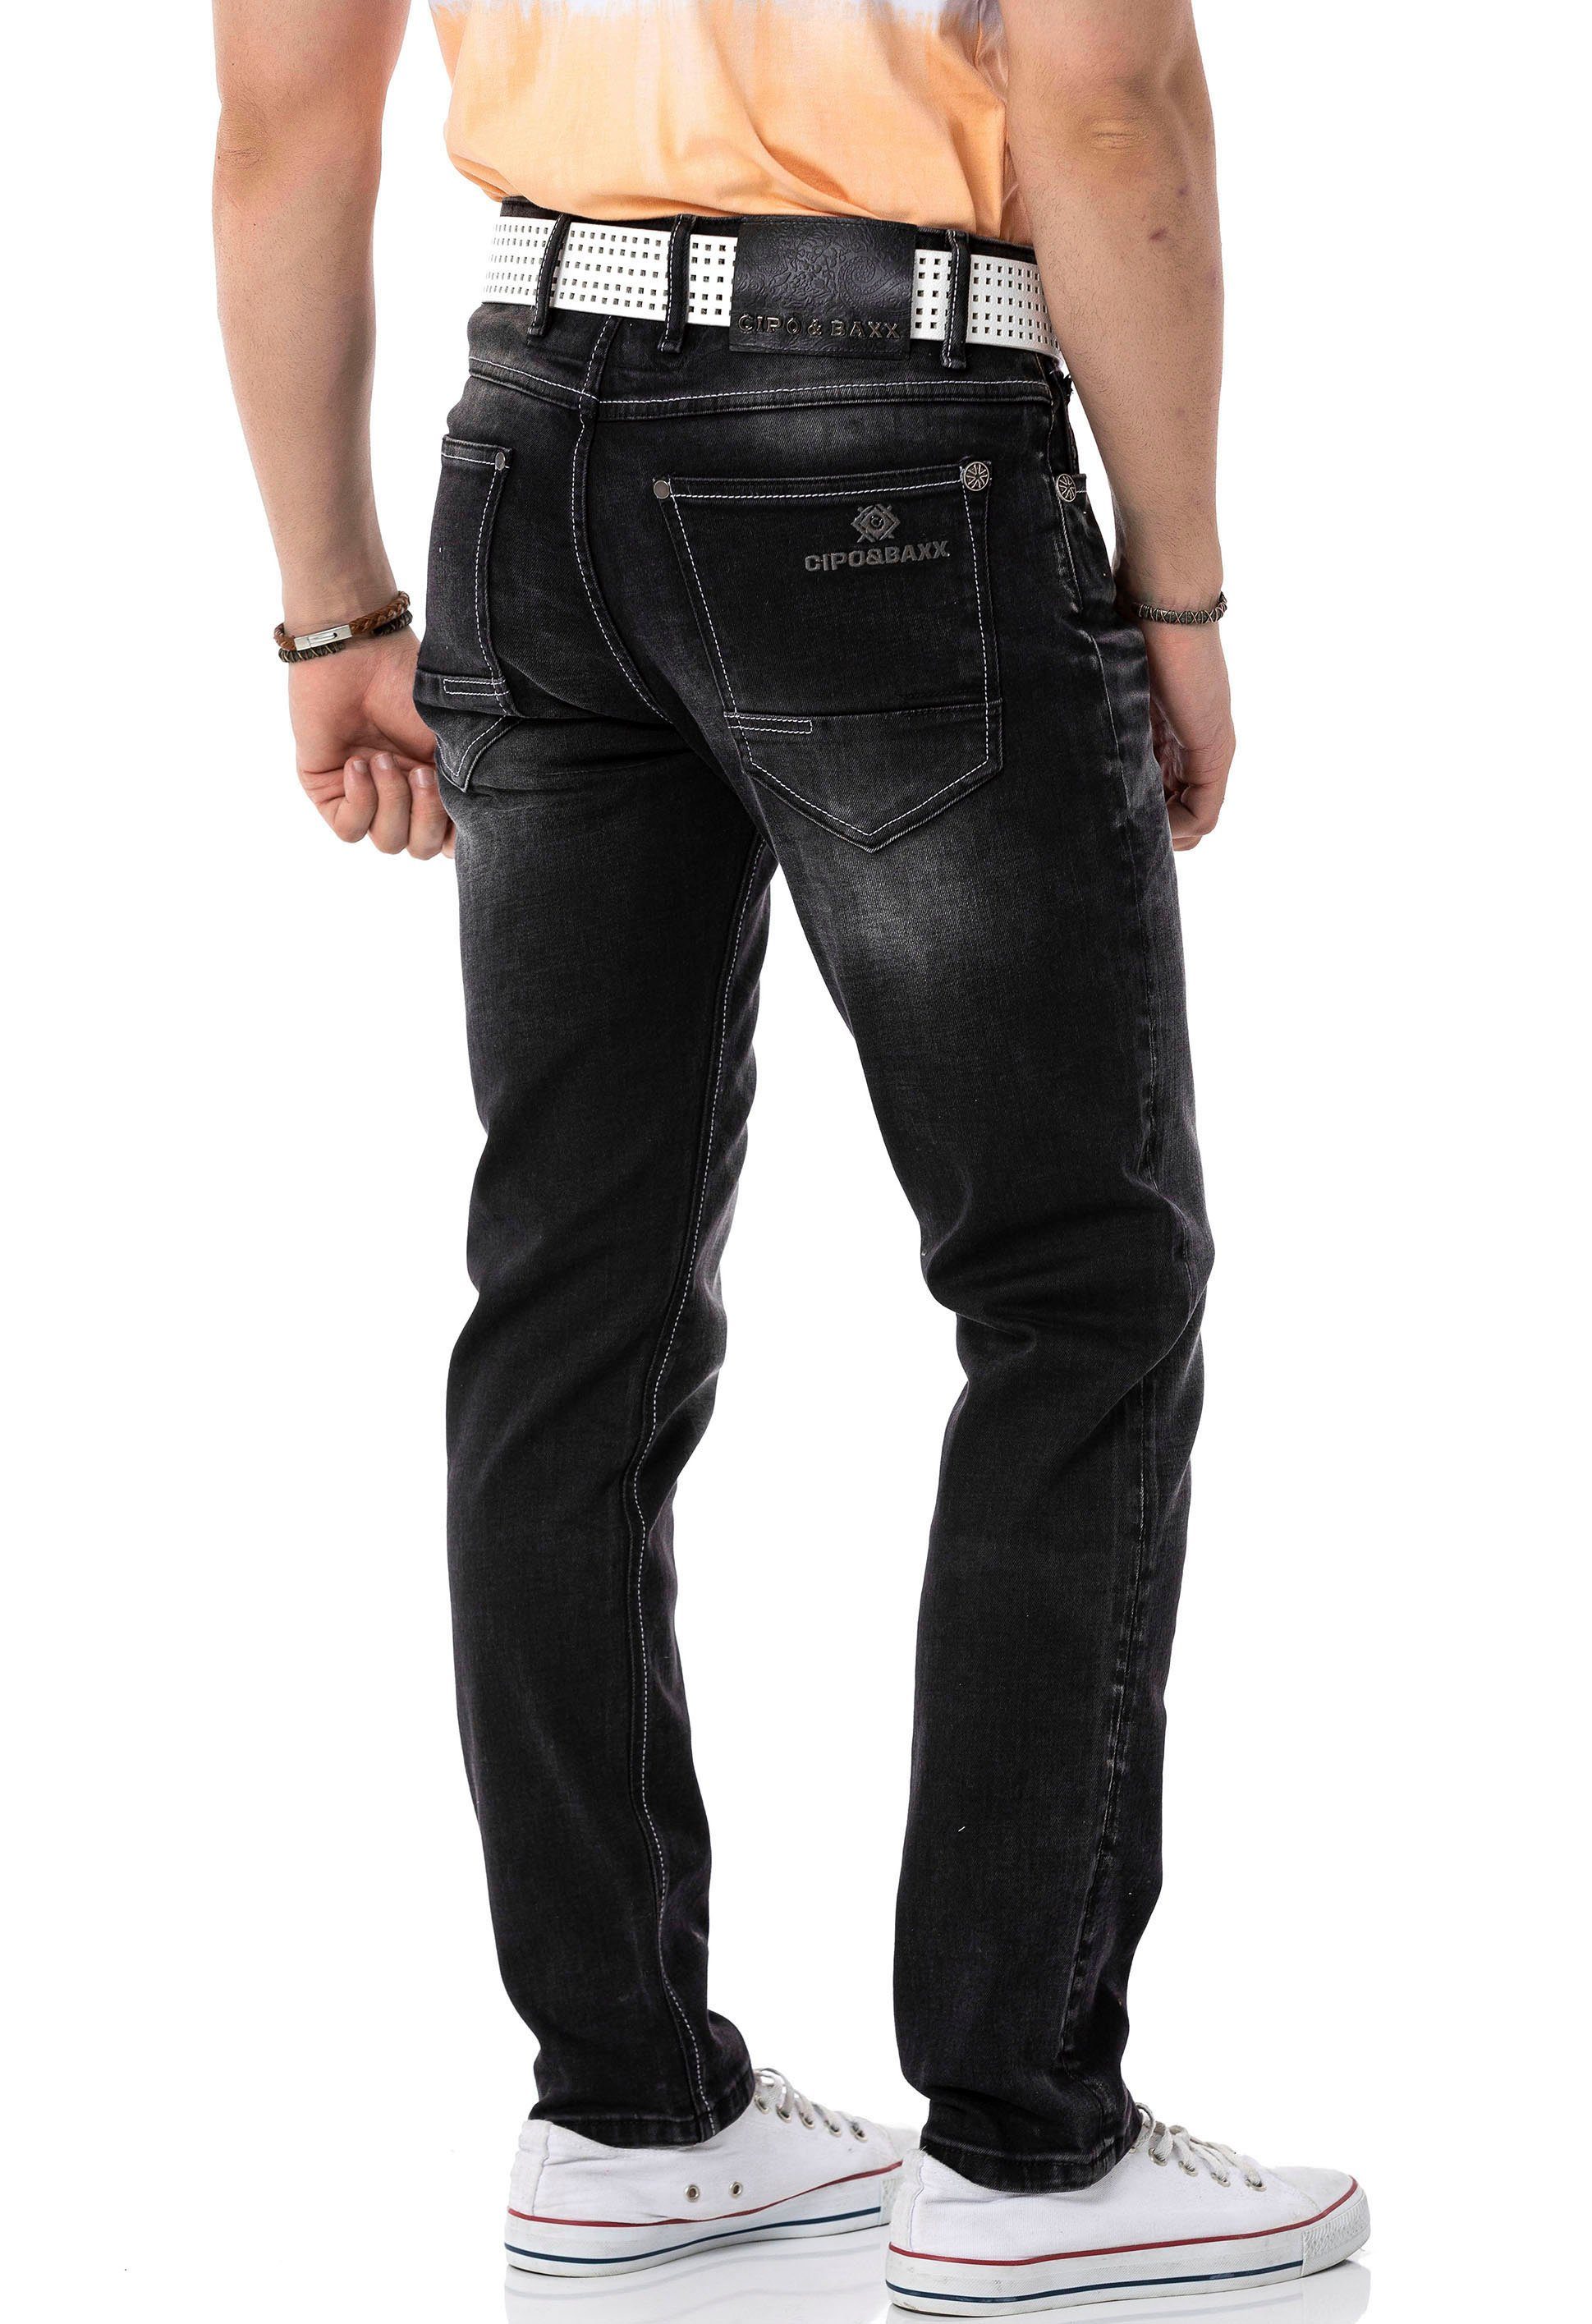 & Cipo Regular-fit-Jeans Baxx